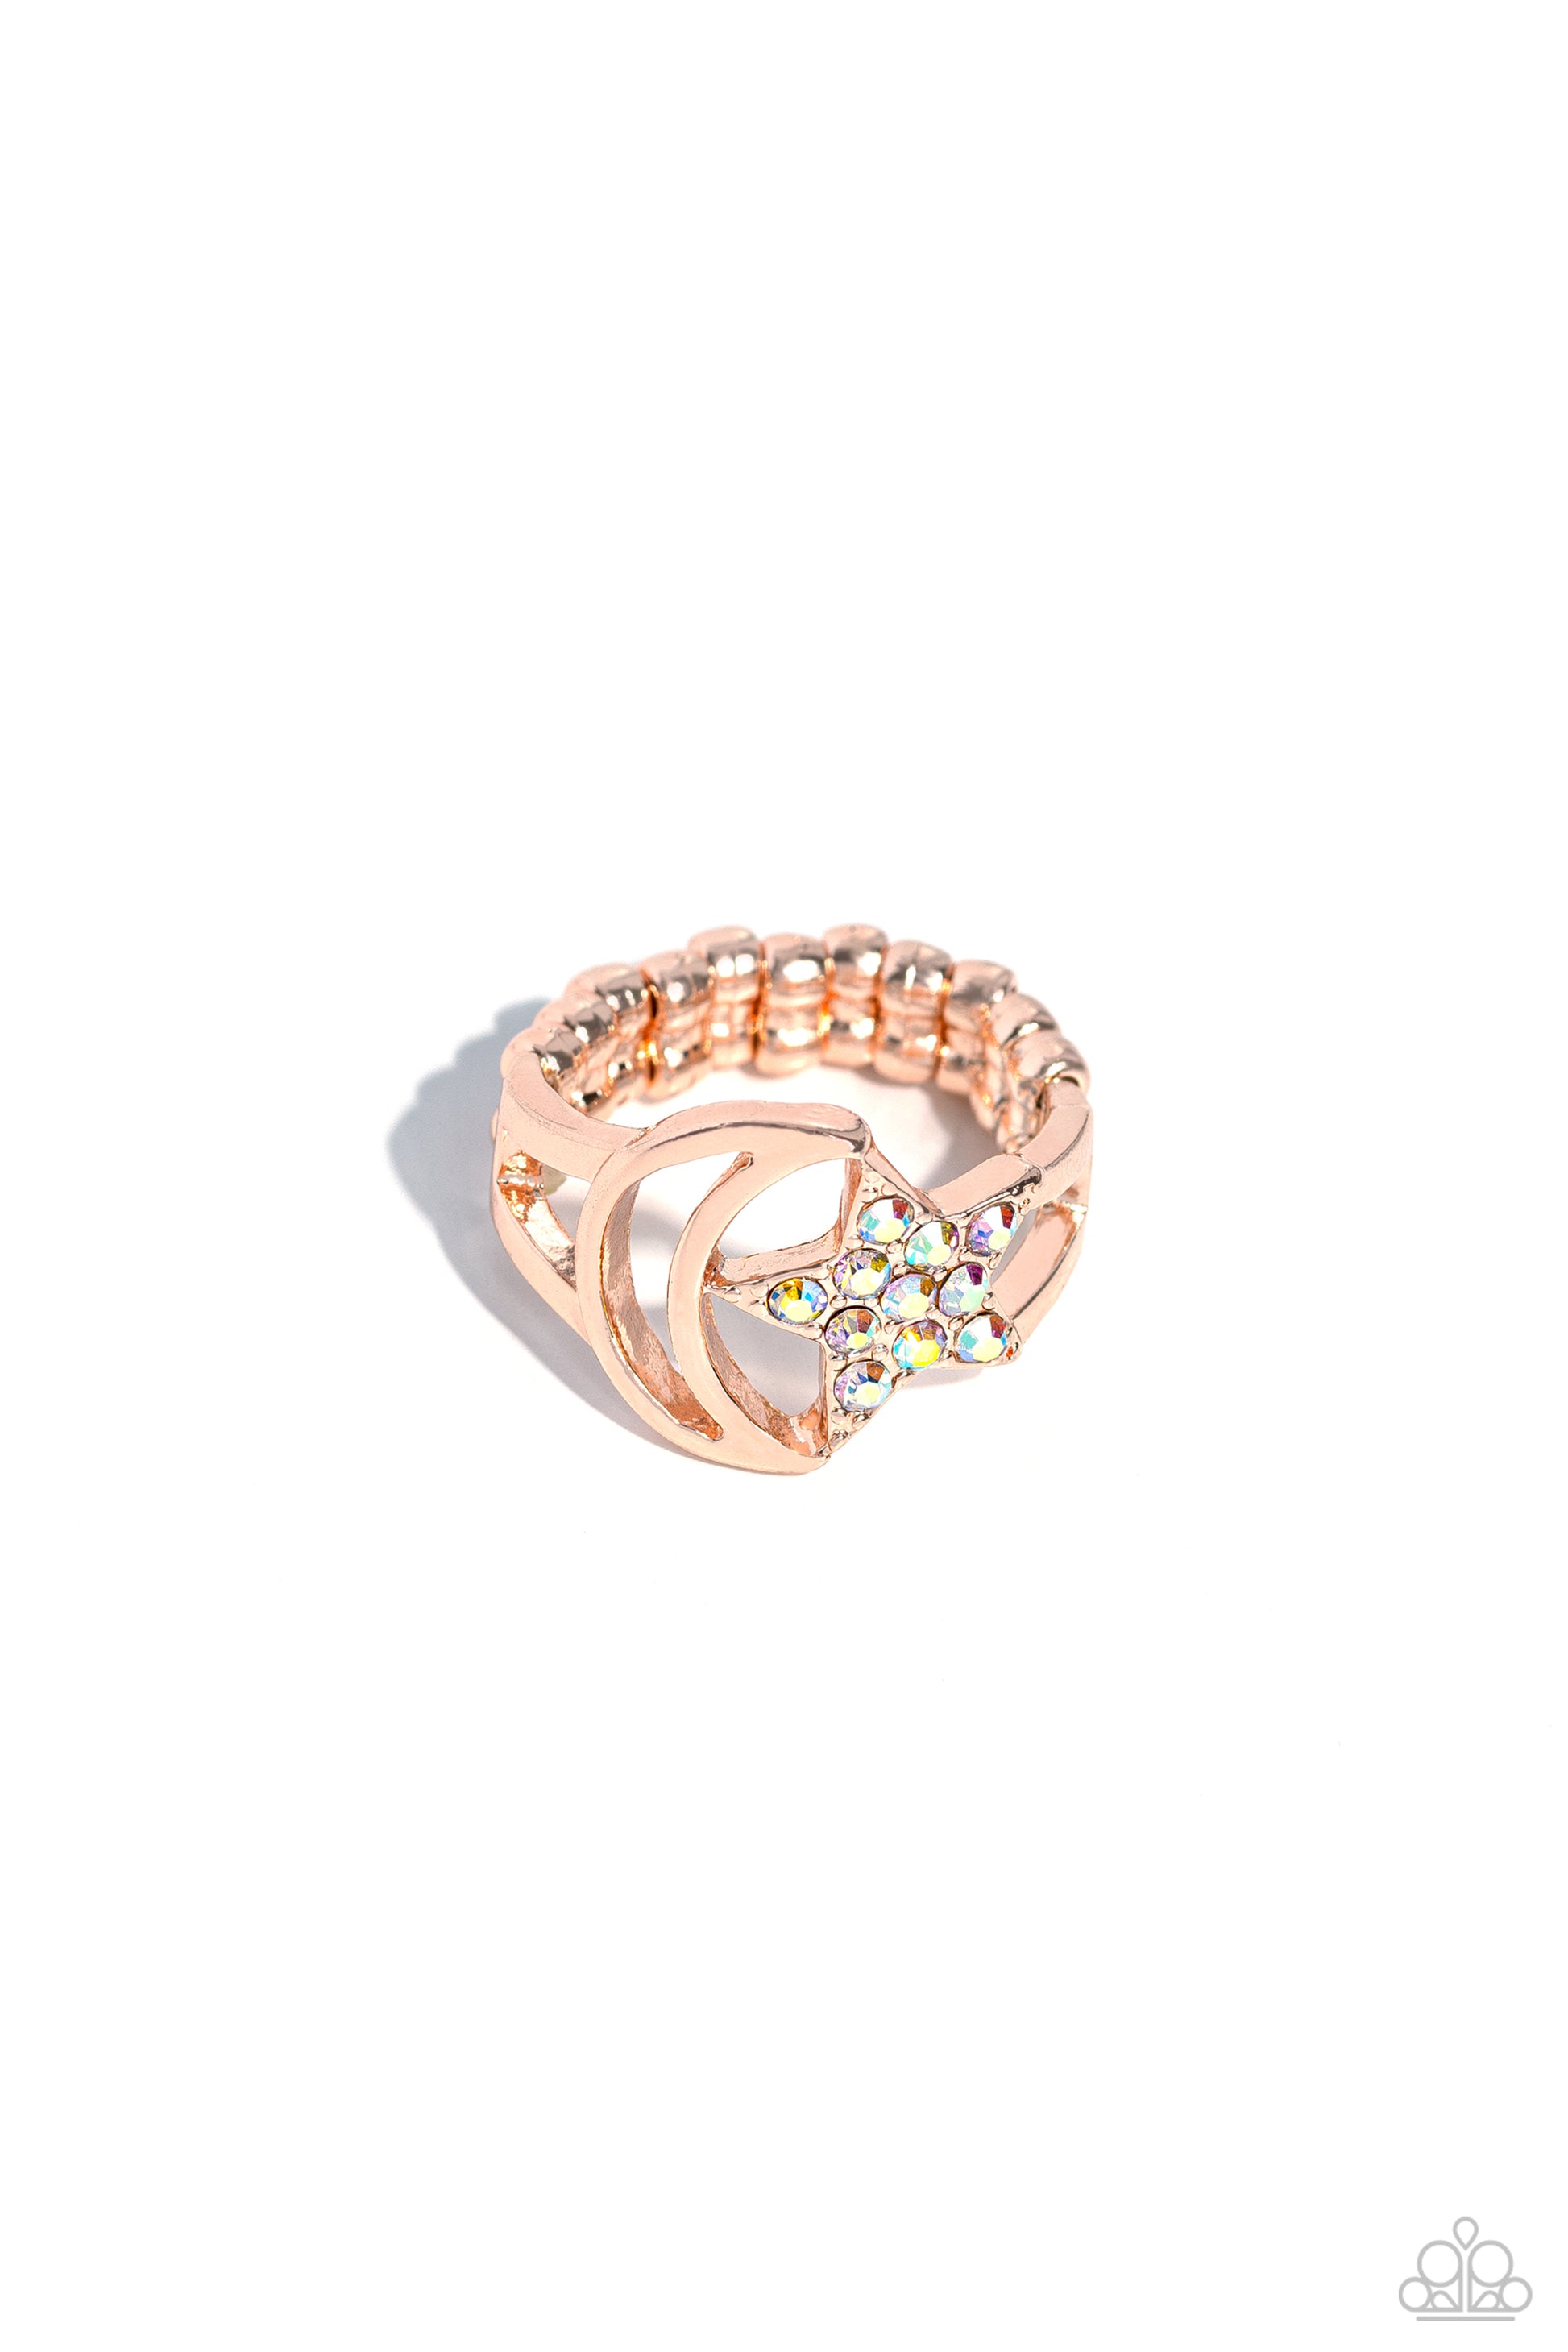 Stargazing Style - rose gold - Paparazzi ring